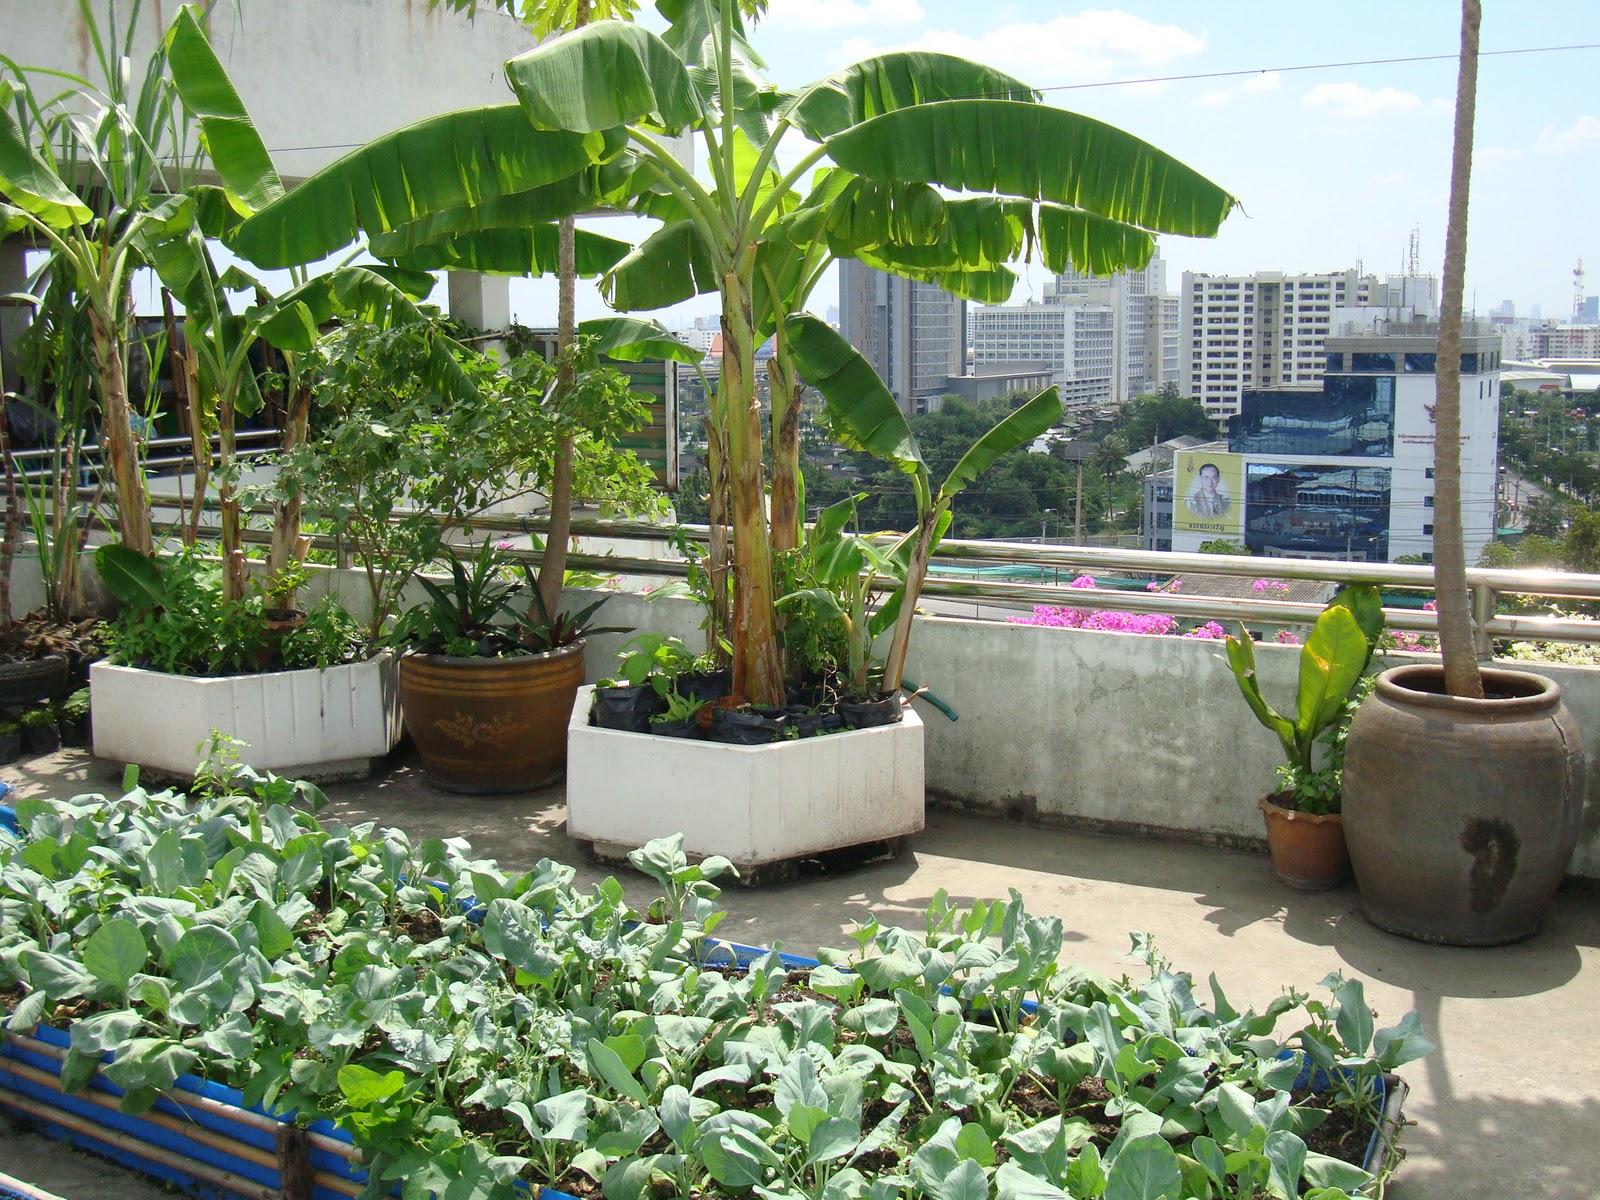 Năm 2024, vườn trên sân thượng trở thành xu hướng với những mảng xanh từ cây cối, hoa lá. Không gian sống được nâng tầm khi giữa thành phố ồn ào, bạn có thể tìm thấy những khu vườn xanh mát để thư giãn, trồng cây và cảm nhận nhịp sống chậm. Hãy cùng đến và tận hưởng không gian xanh mát trên sân thượng.